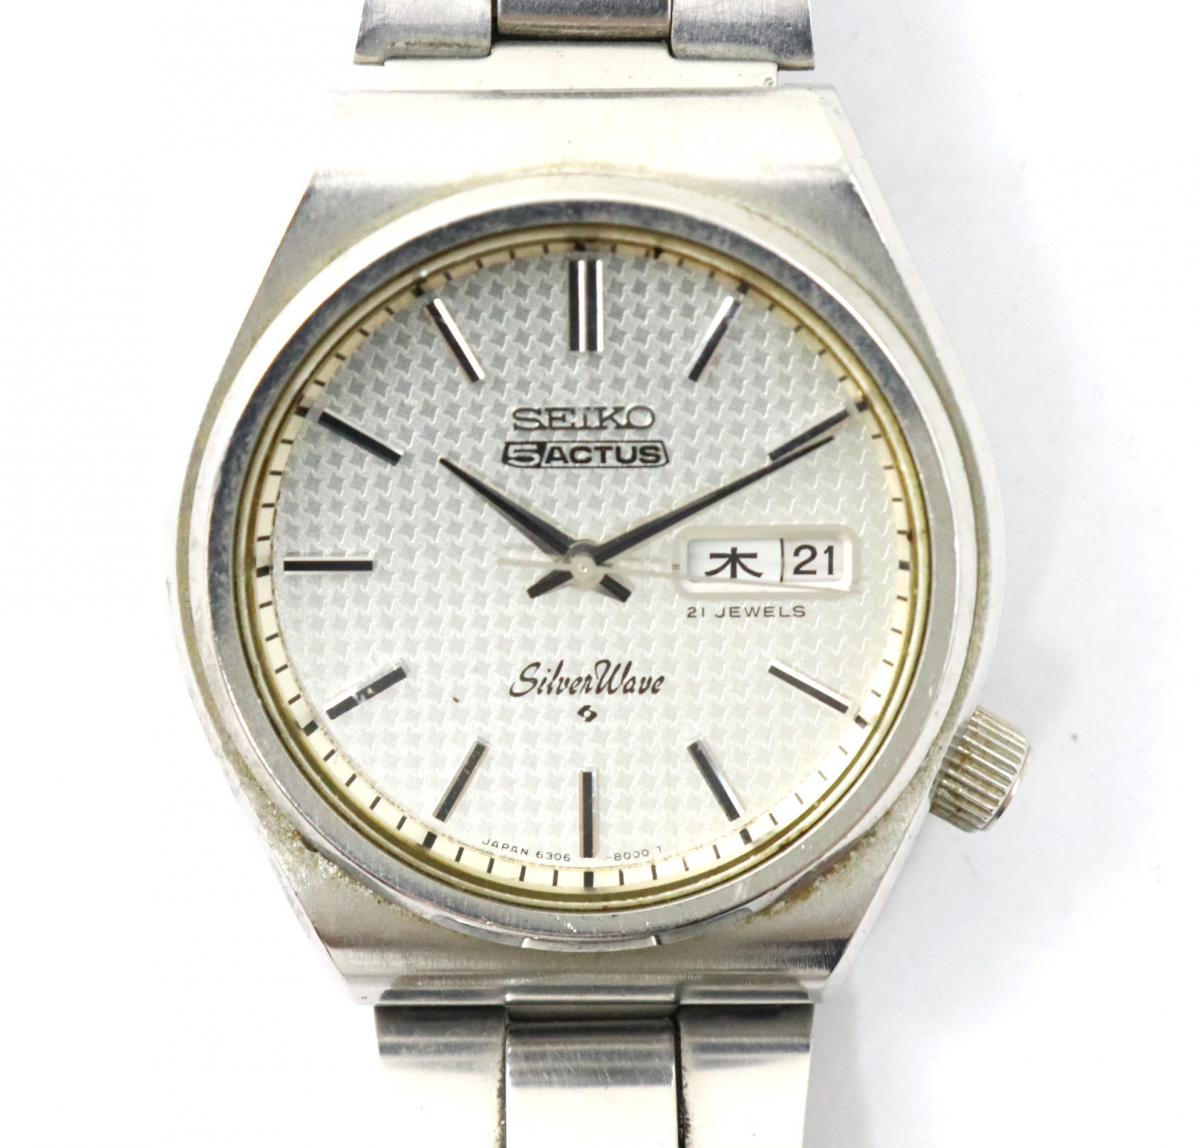 SEIKO 5ACTUS Silverwave 6306-8010 セイコー シルバーウェーブ 腕時計 時刻 デイト モザイクダイヤル ファッション 小物 005FEDFD69_画像1